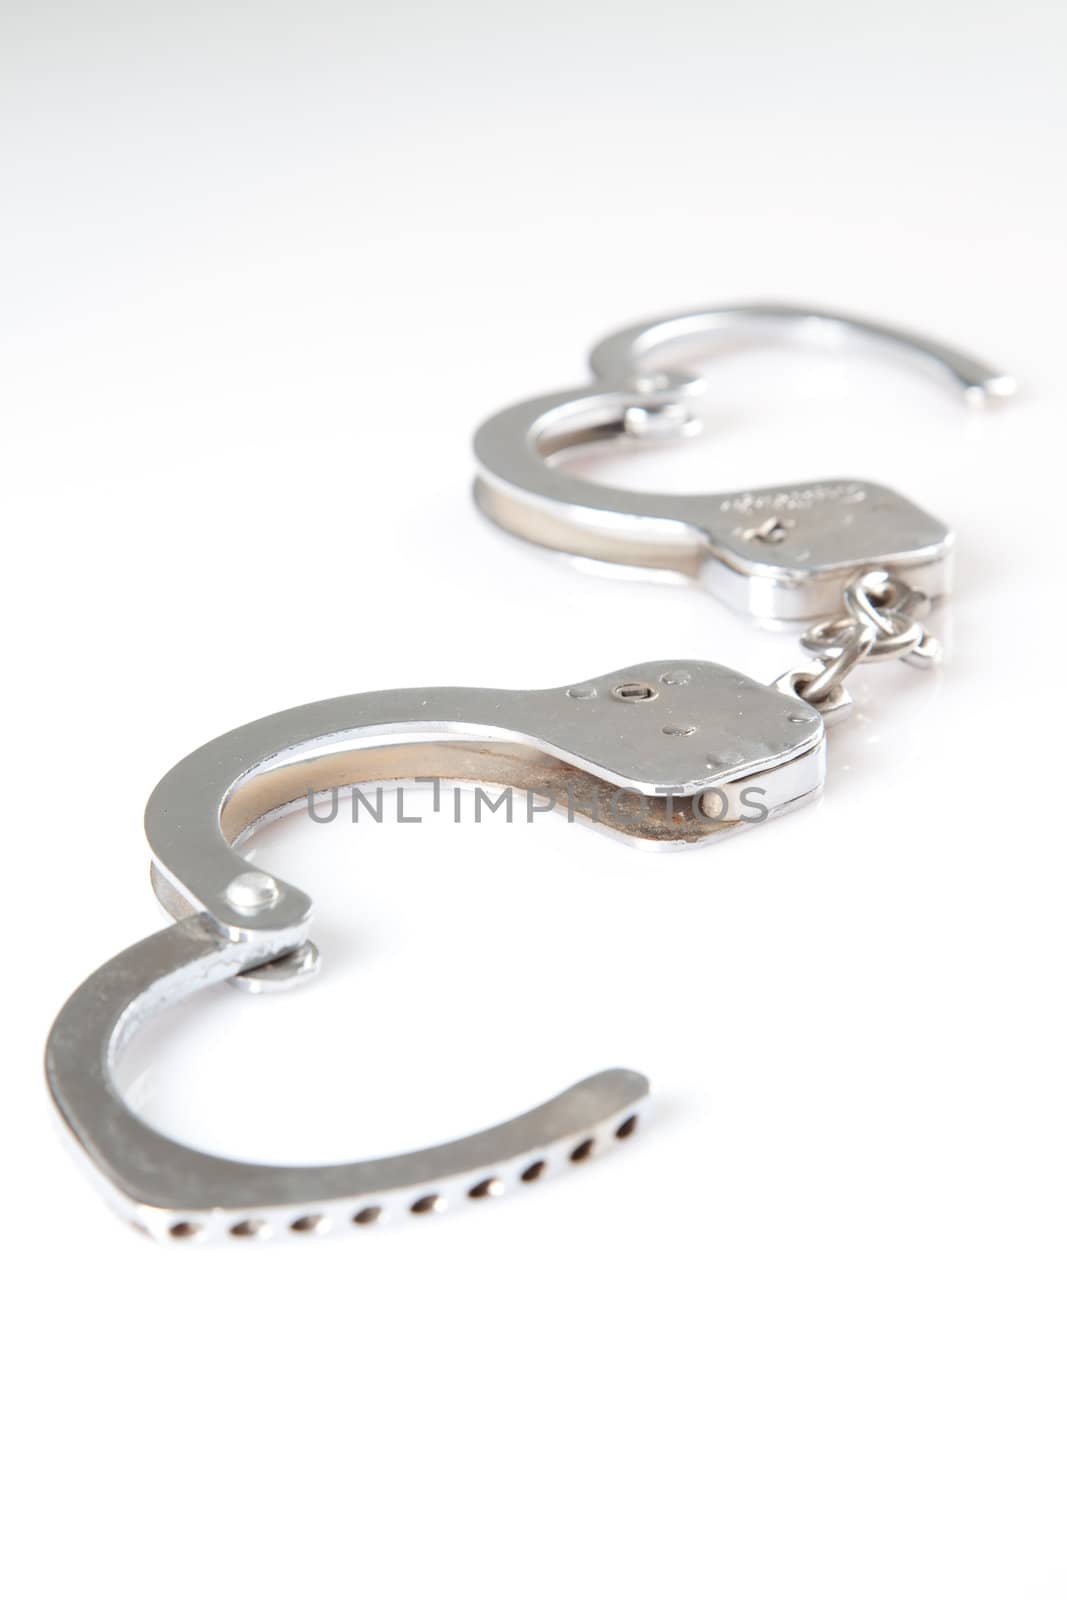 hand cuffs